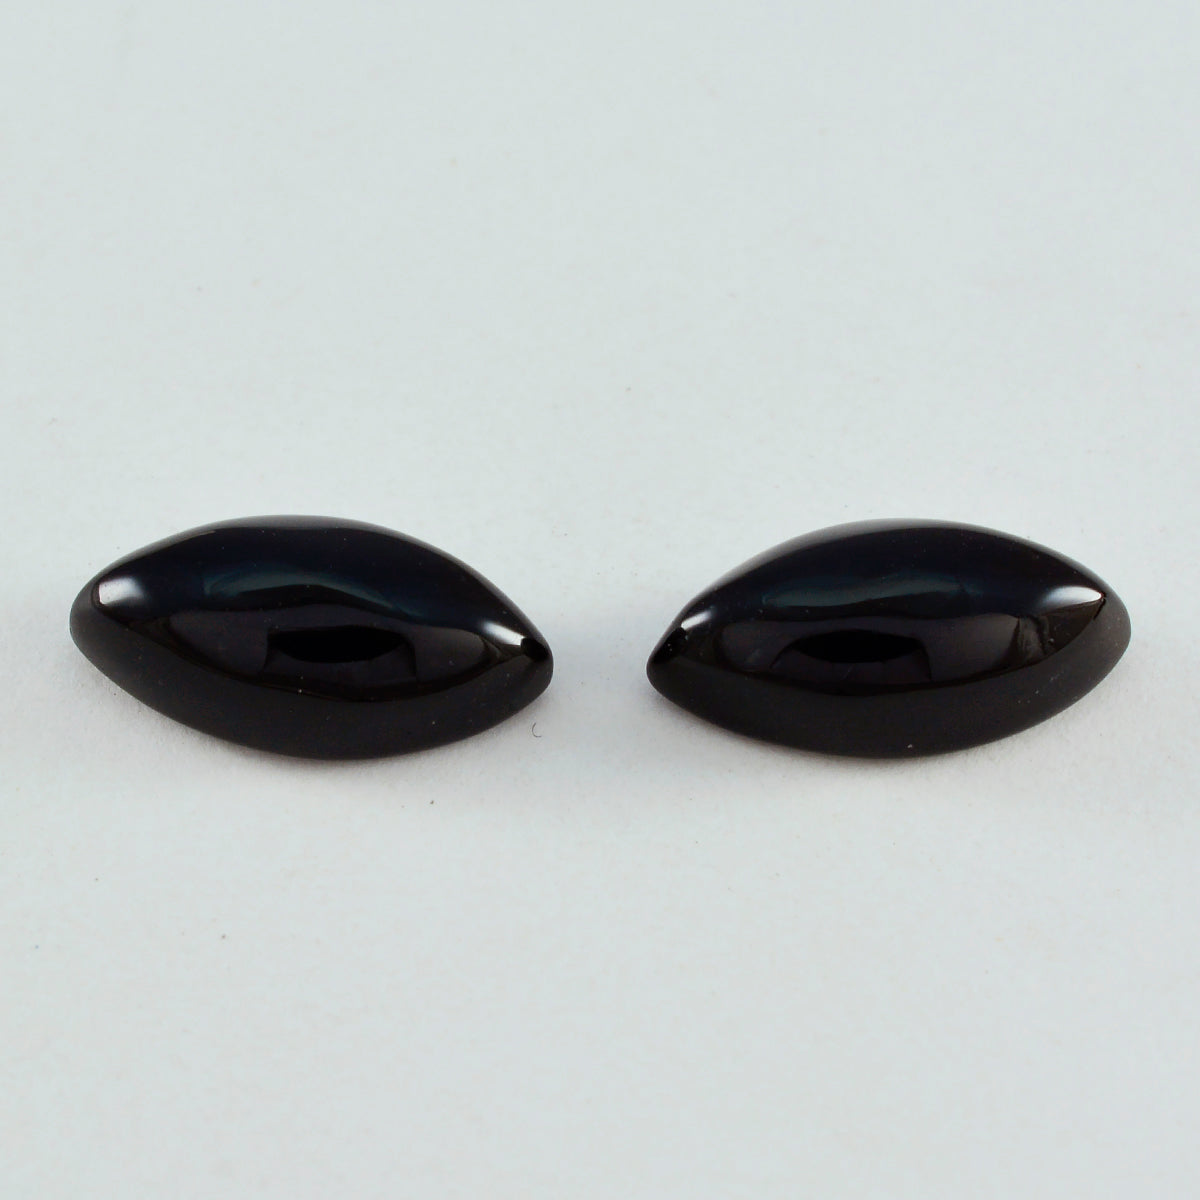 Riyogems 1 Stück schwarzer Onyx-Cabochon, 9 x 18 mm, Marquise-Form, schöne, hochwertige lose Edelsteine